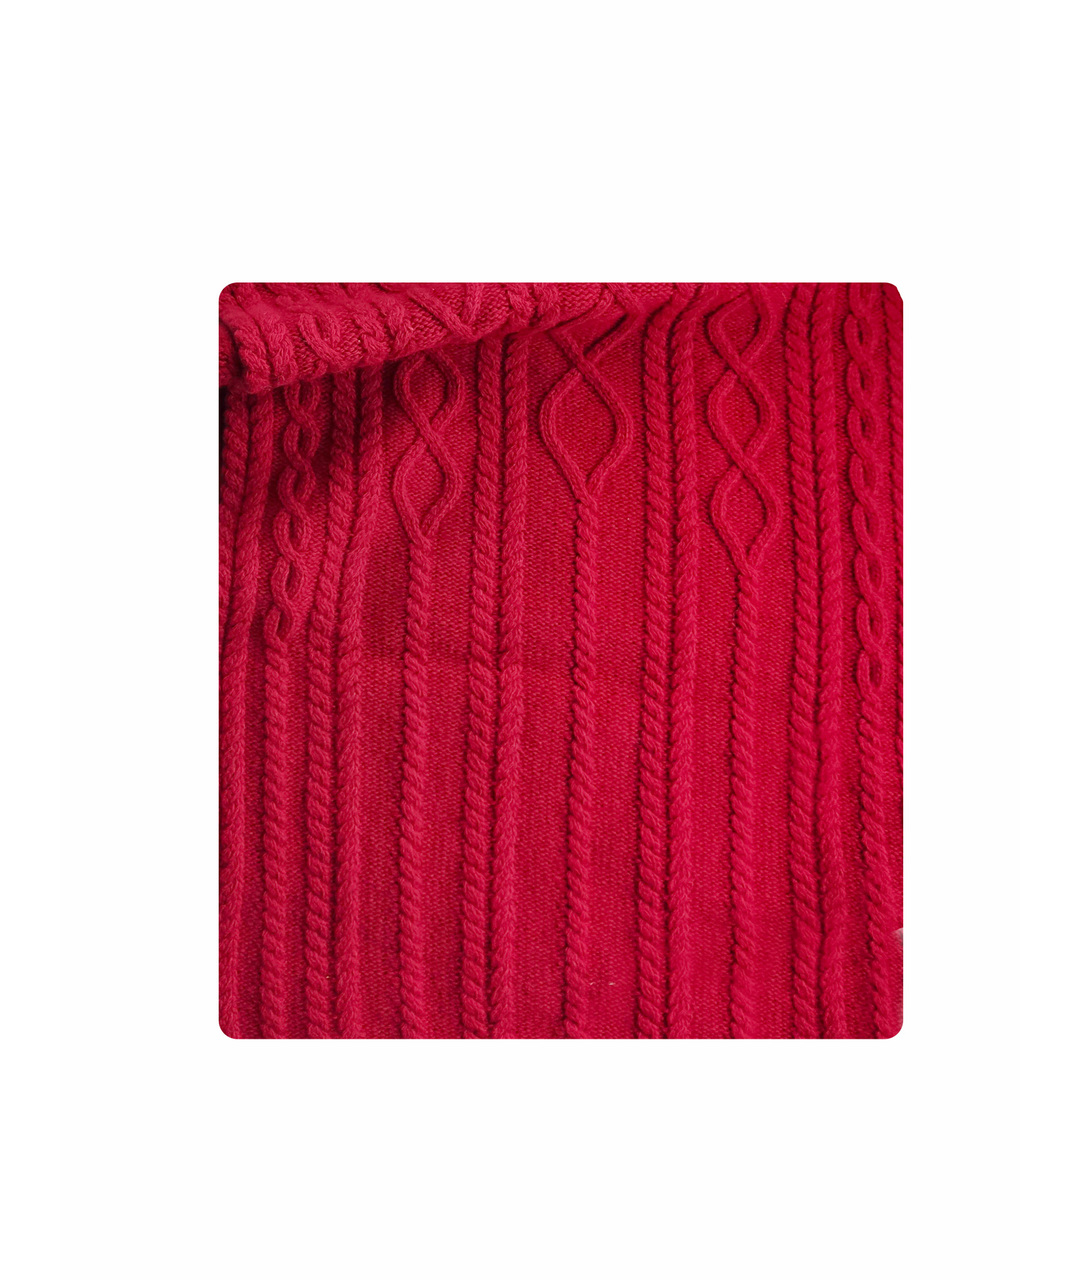 'S MAX MARA Красный шерстяной шарф, фото 1